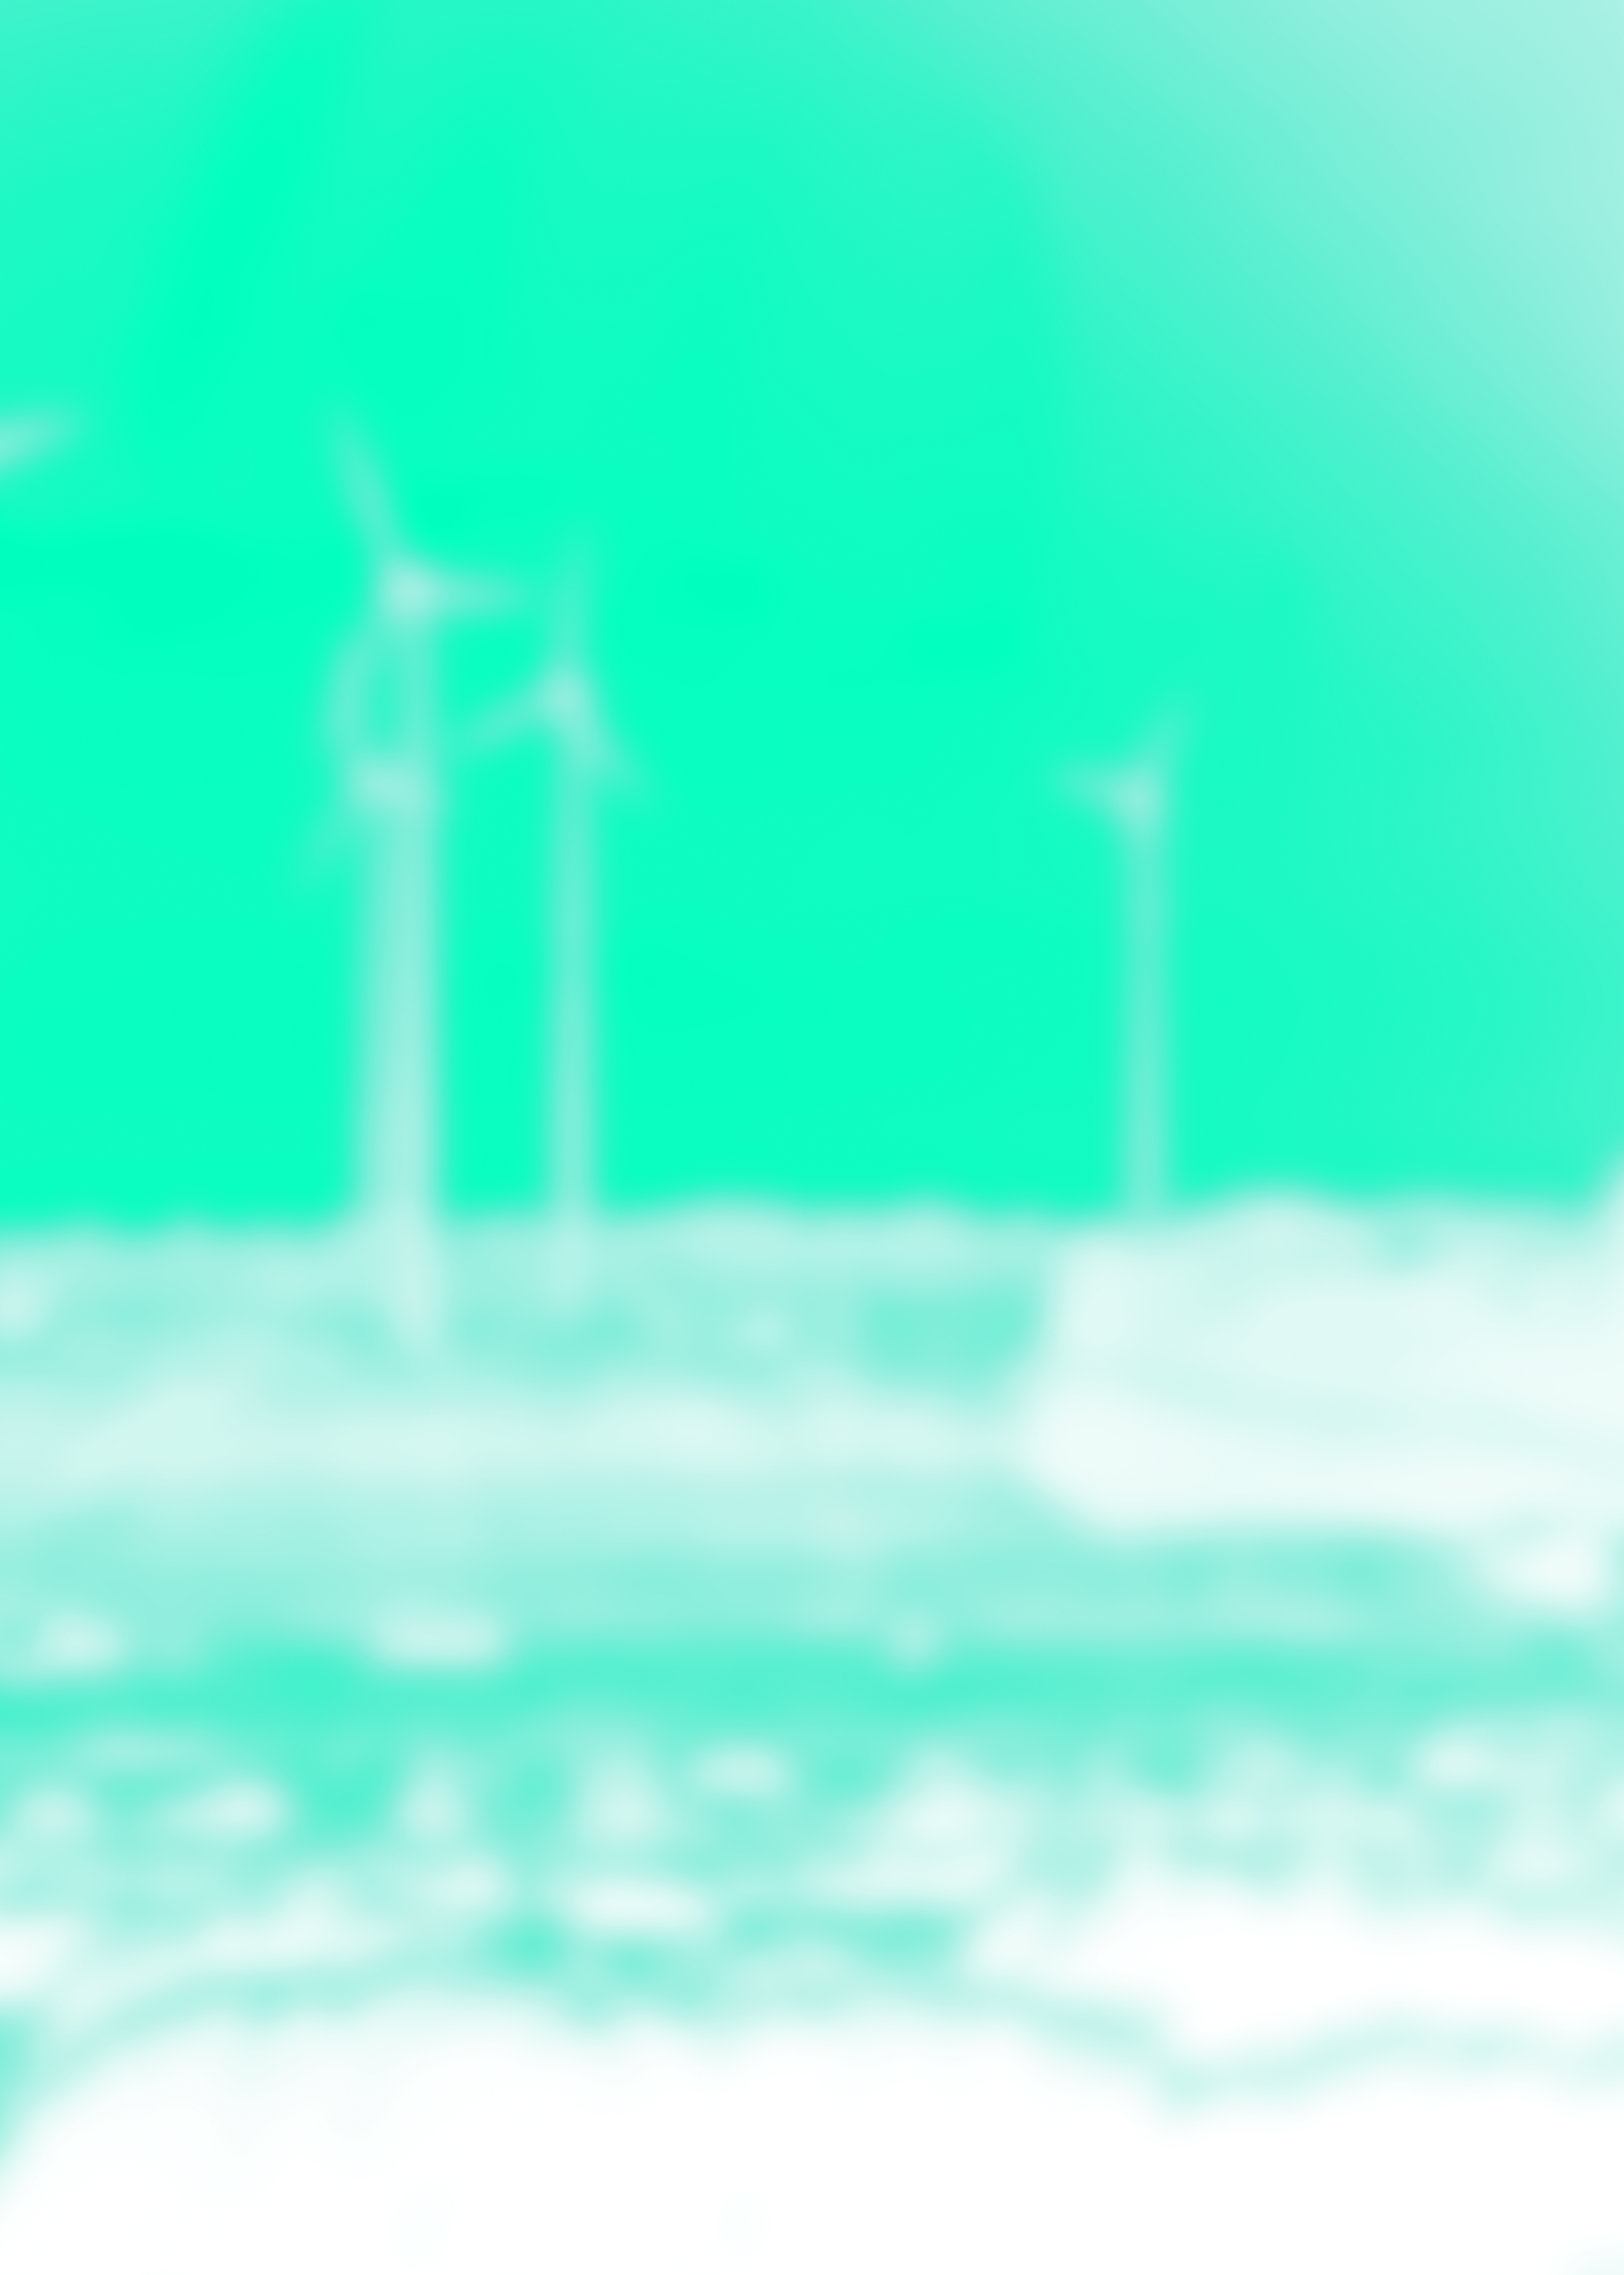 GROSSWINDANLAGE Grosswindanlagen weisen eine Gesamthöhe von über 150 m auf. Die bei uns gängigen Anlagen leisten um 3000 Kilowatt.